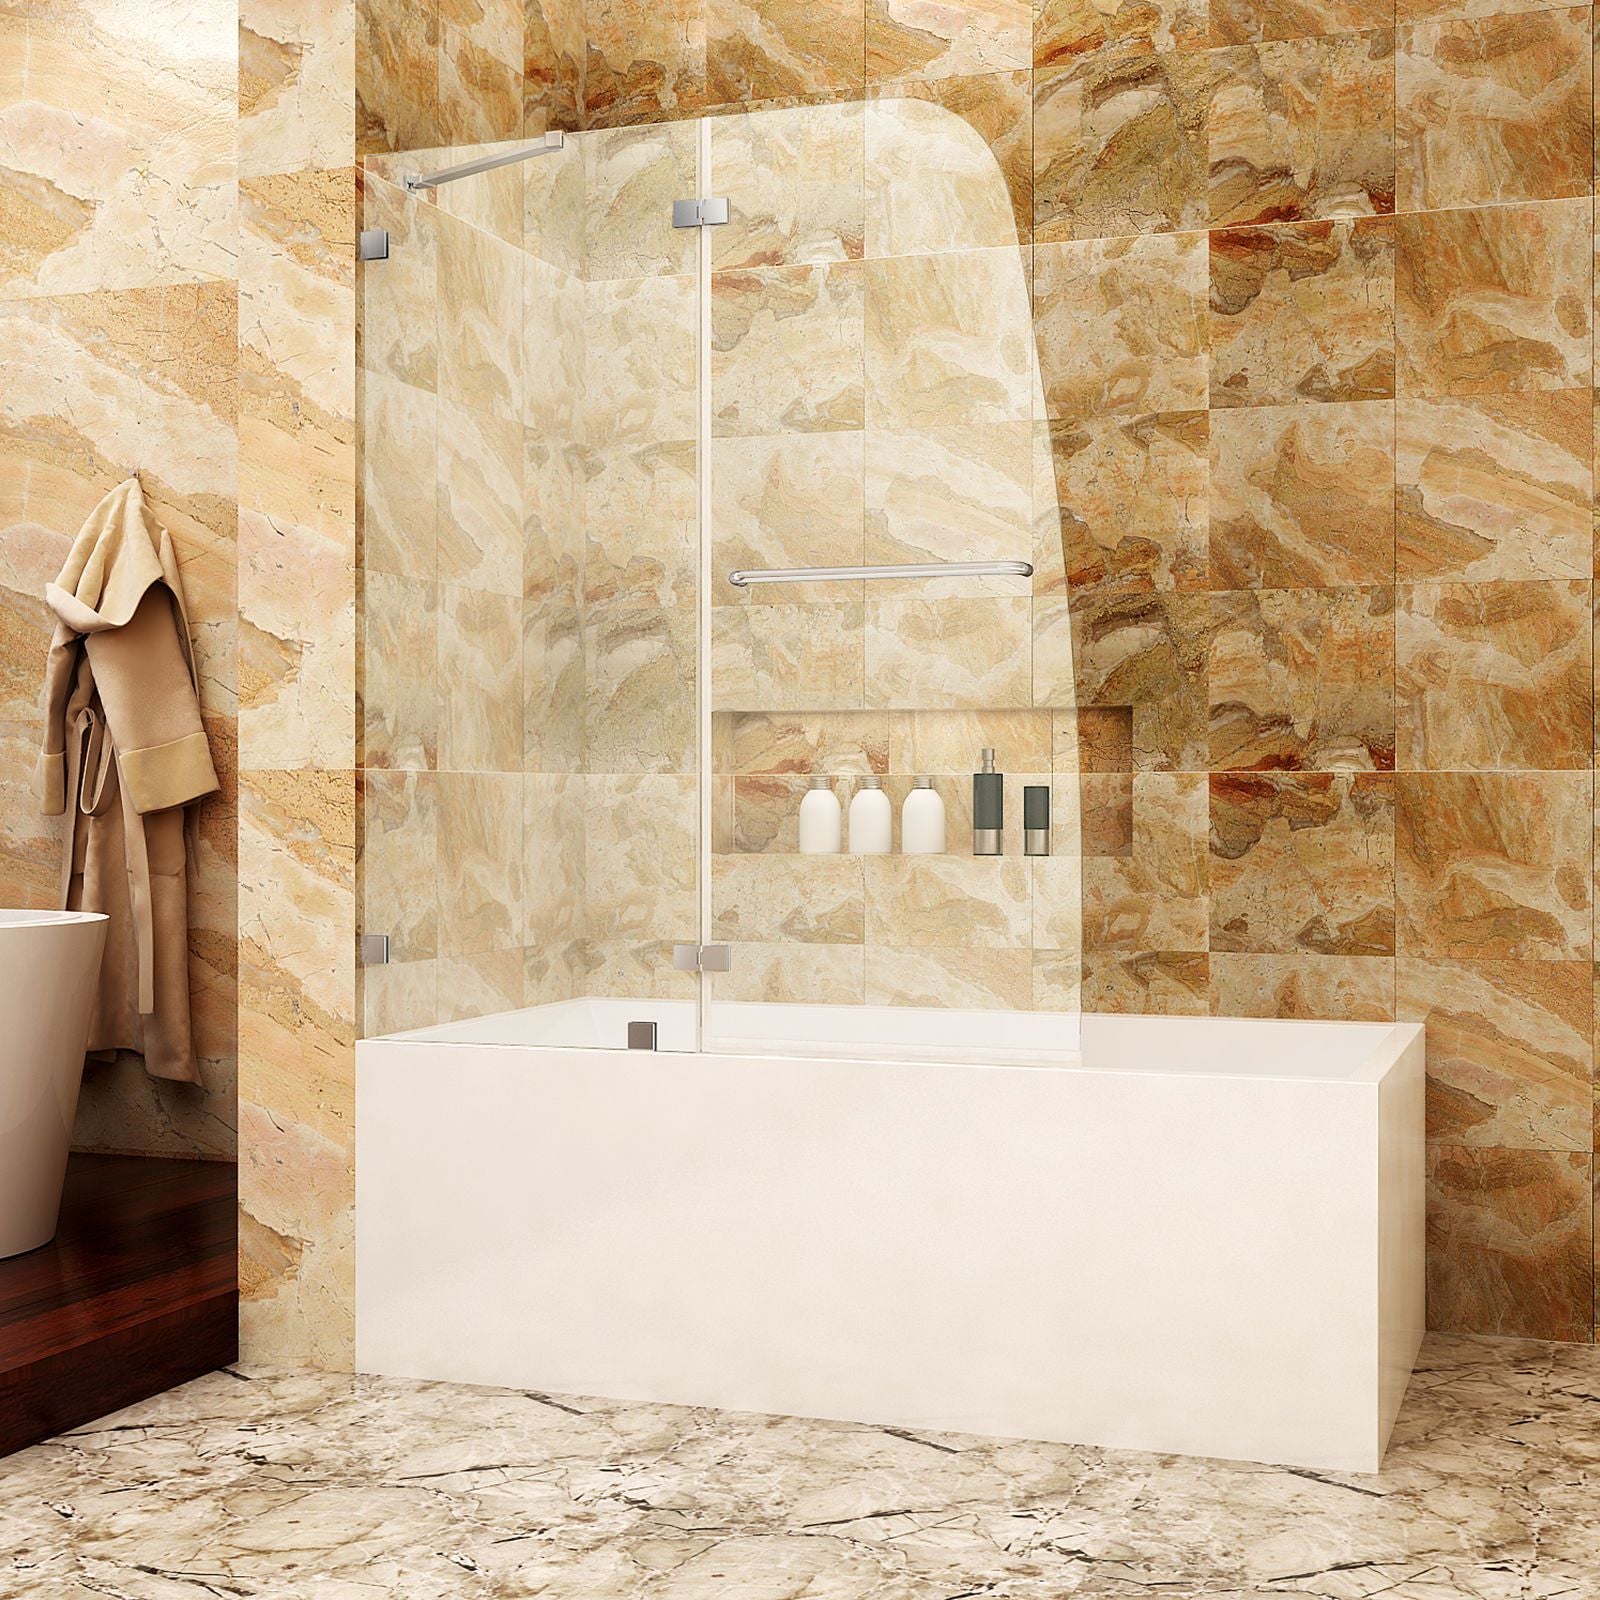 Should I Mount a Frameless Shower Door over a Bathtub?